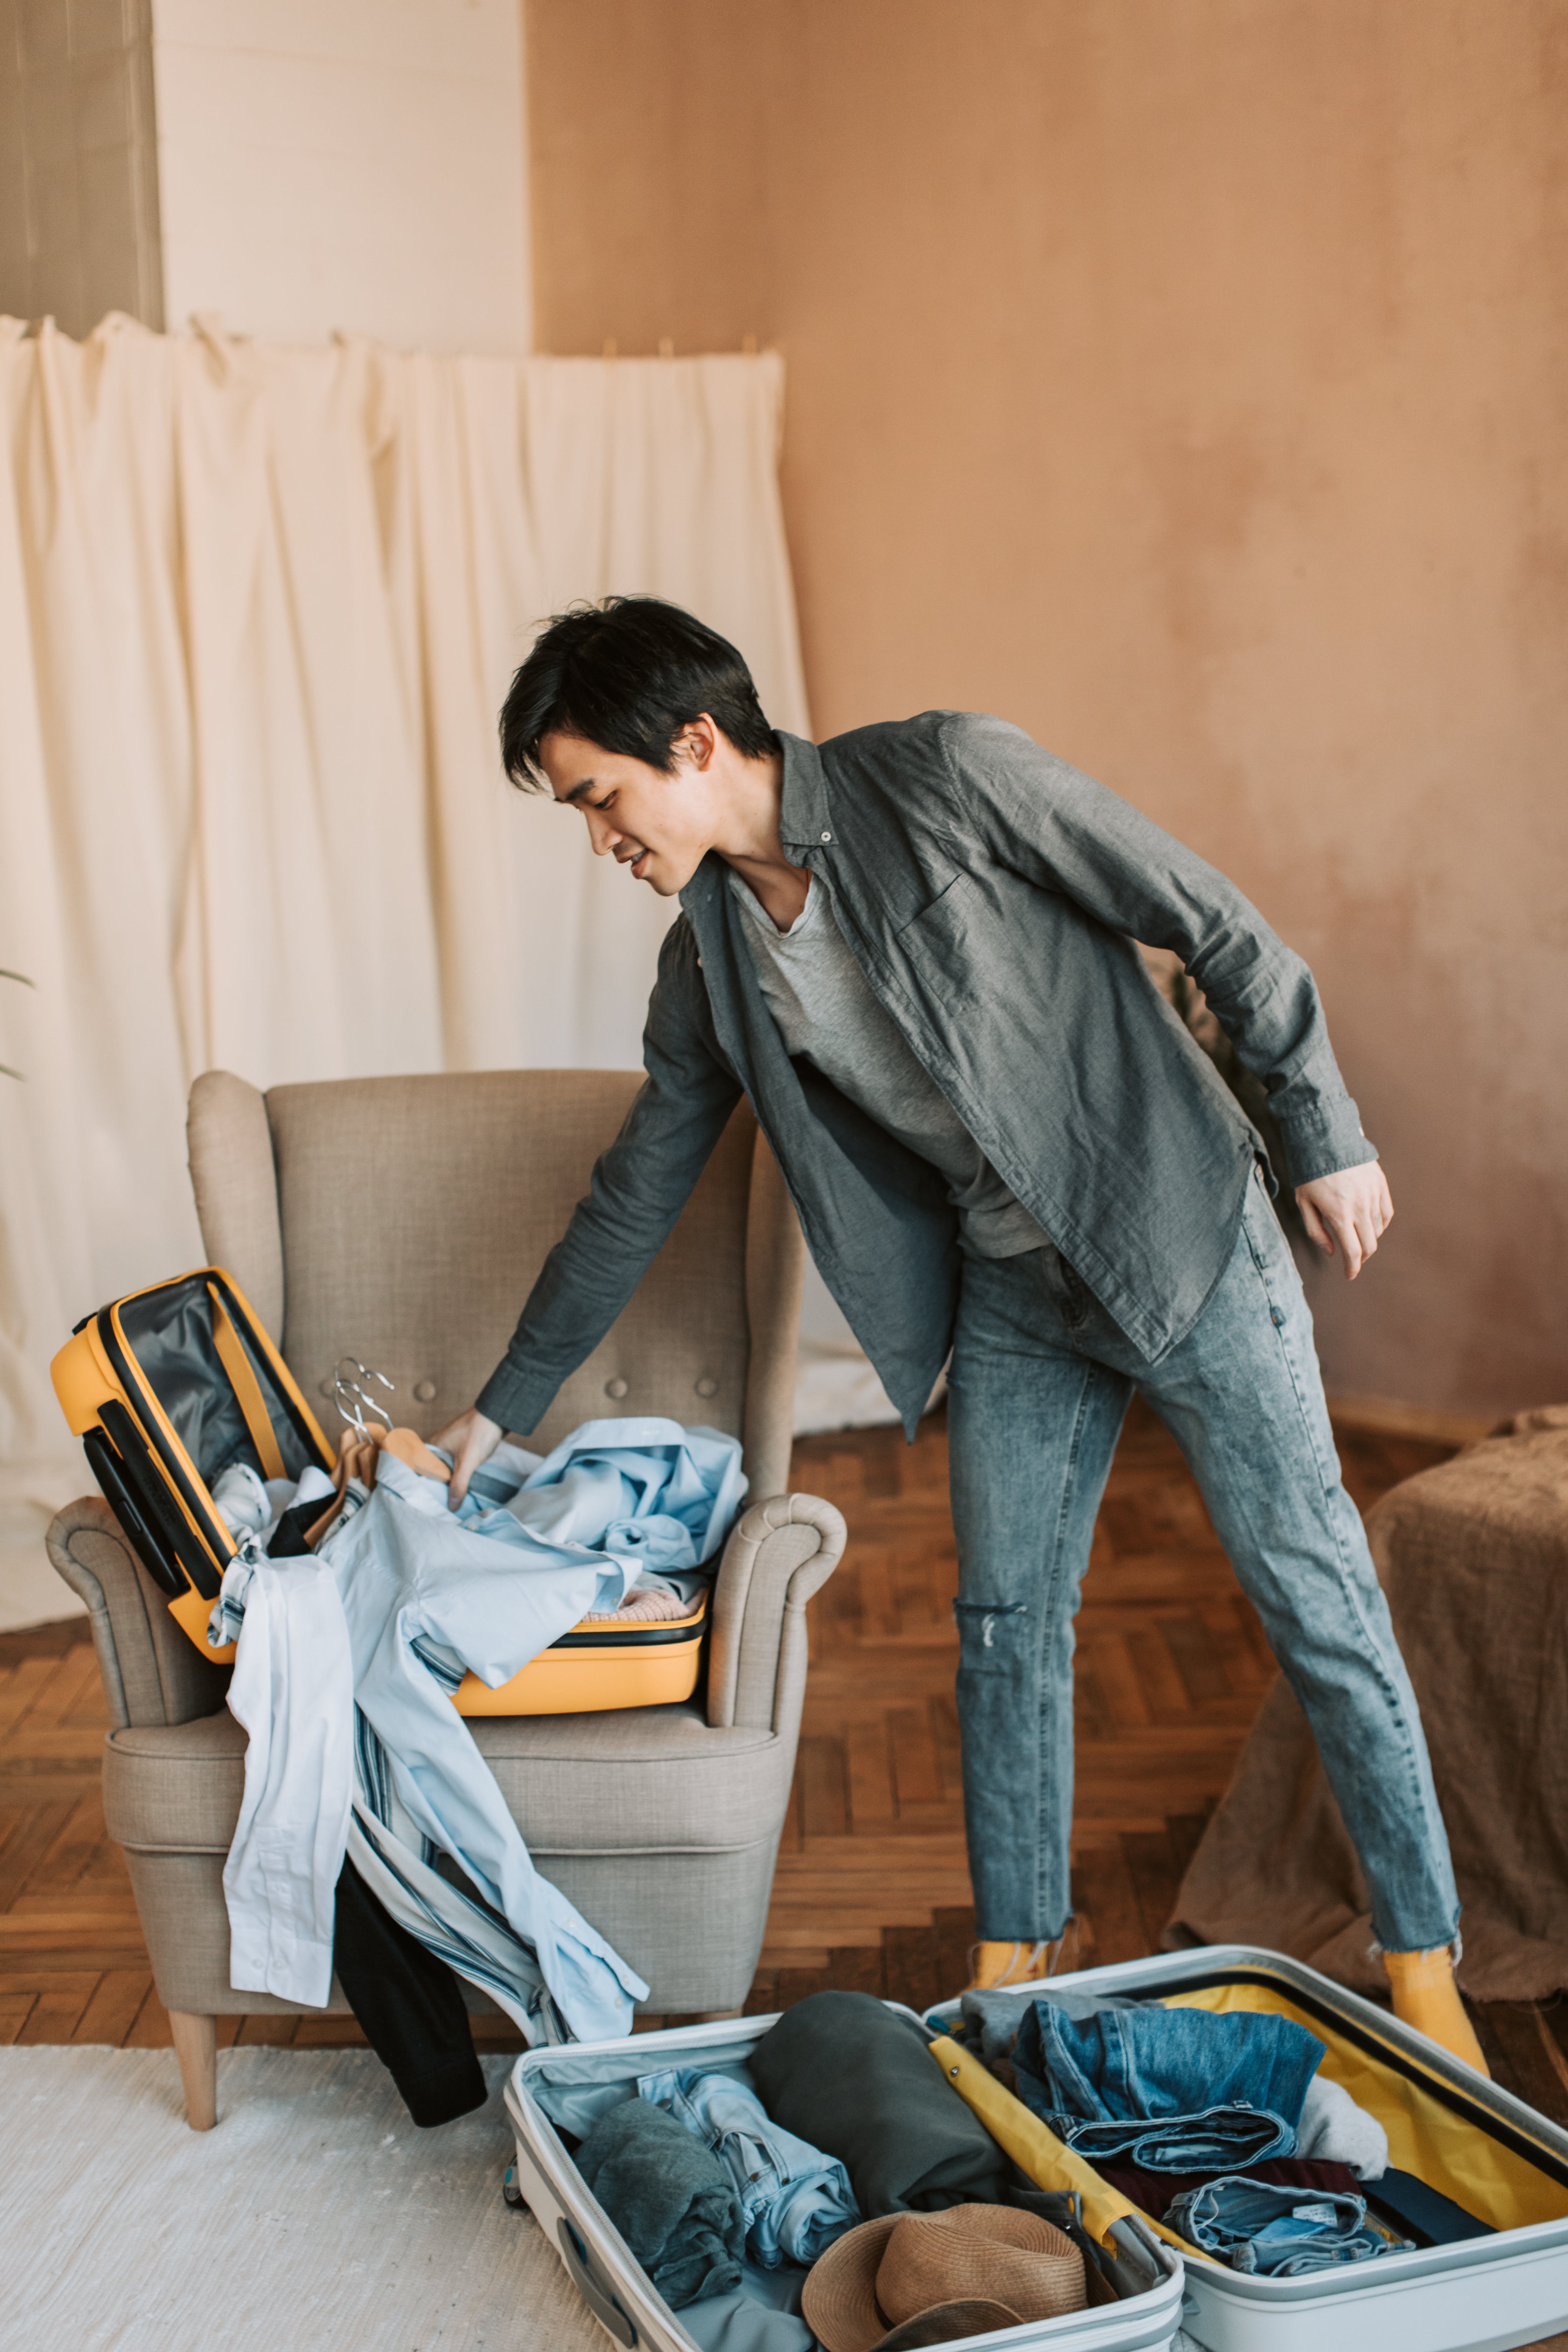 Ein Mann beim Packen seiner Kleidung | Quelle: Pexels